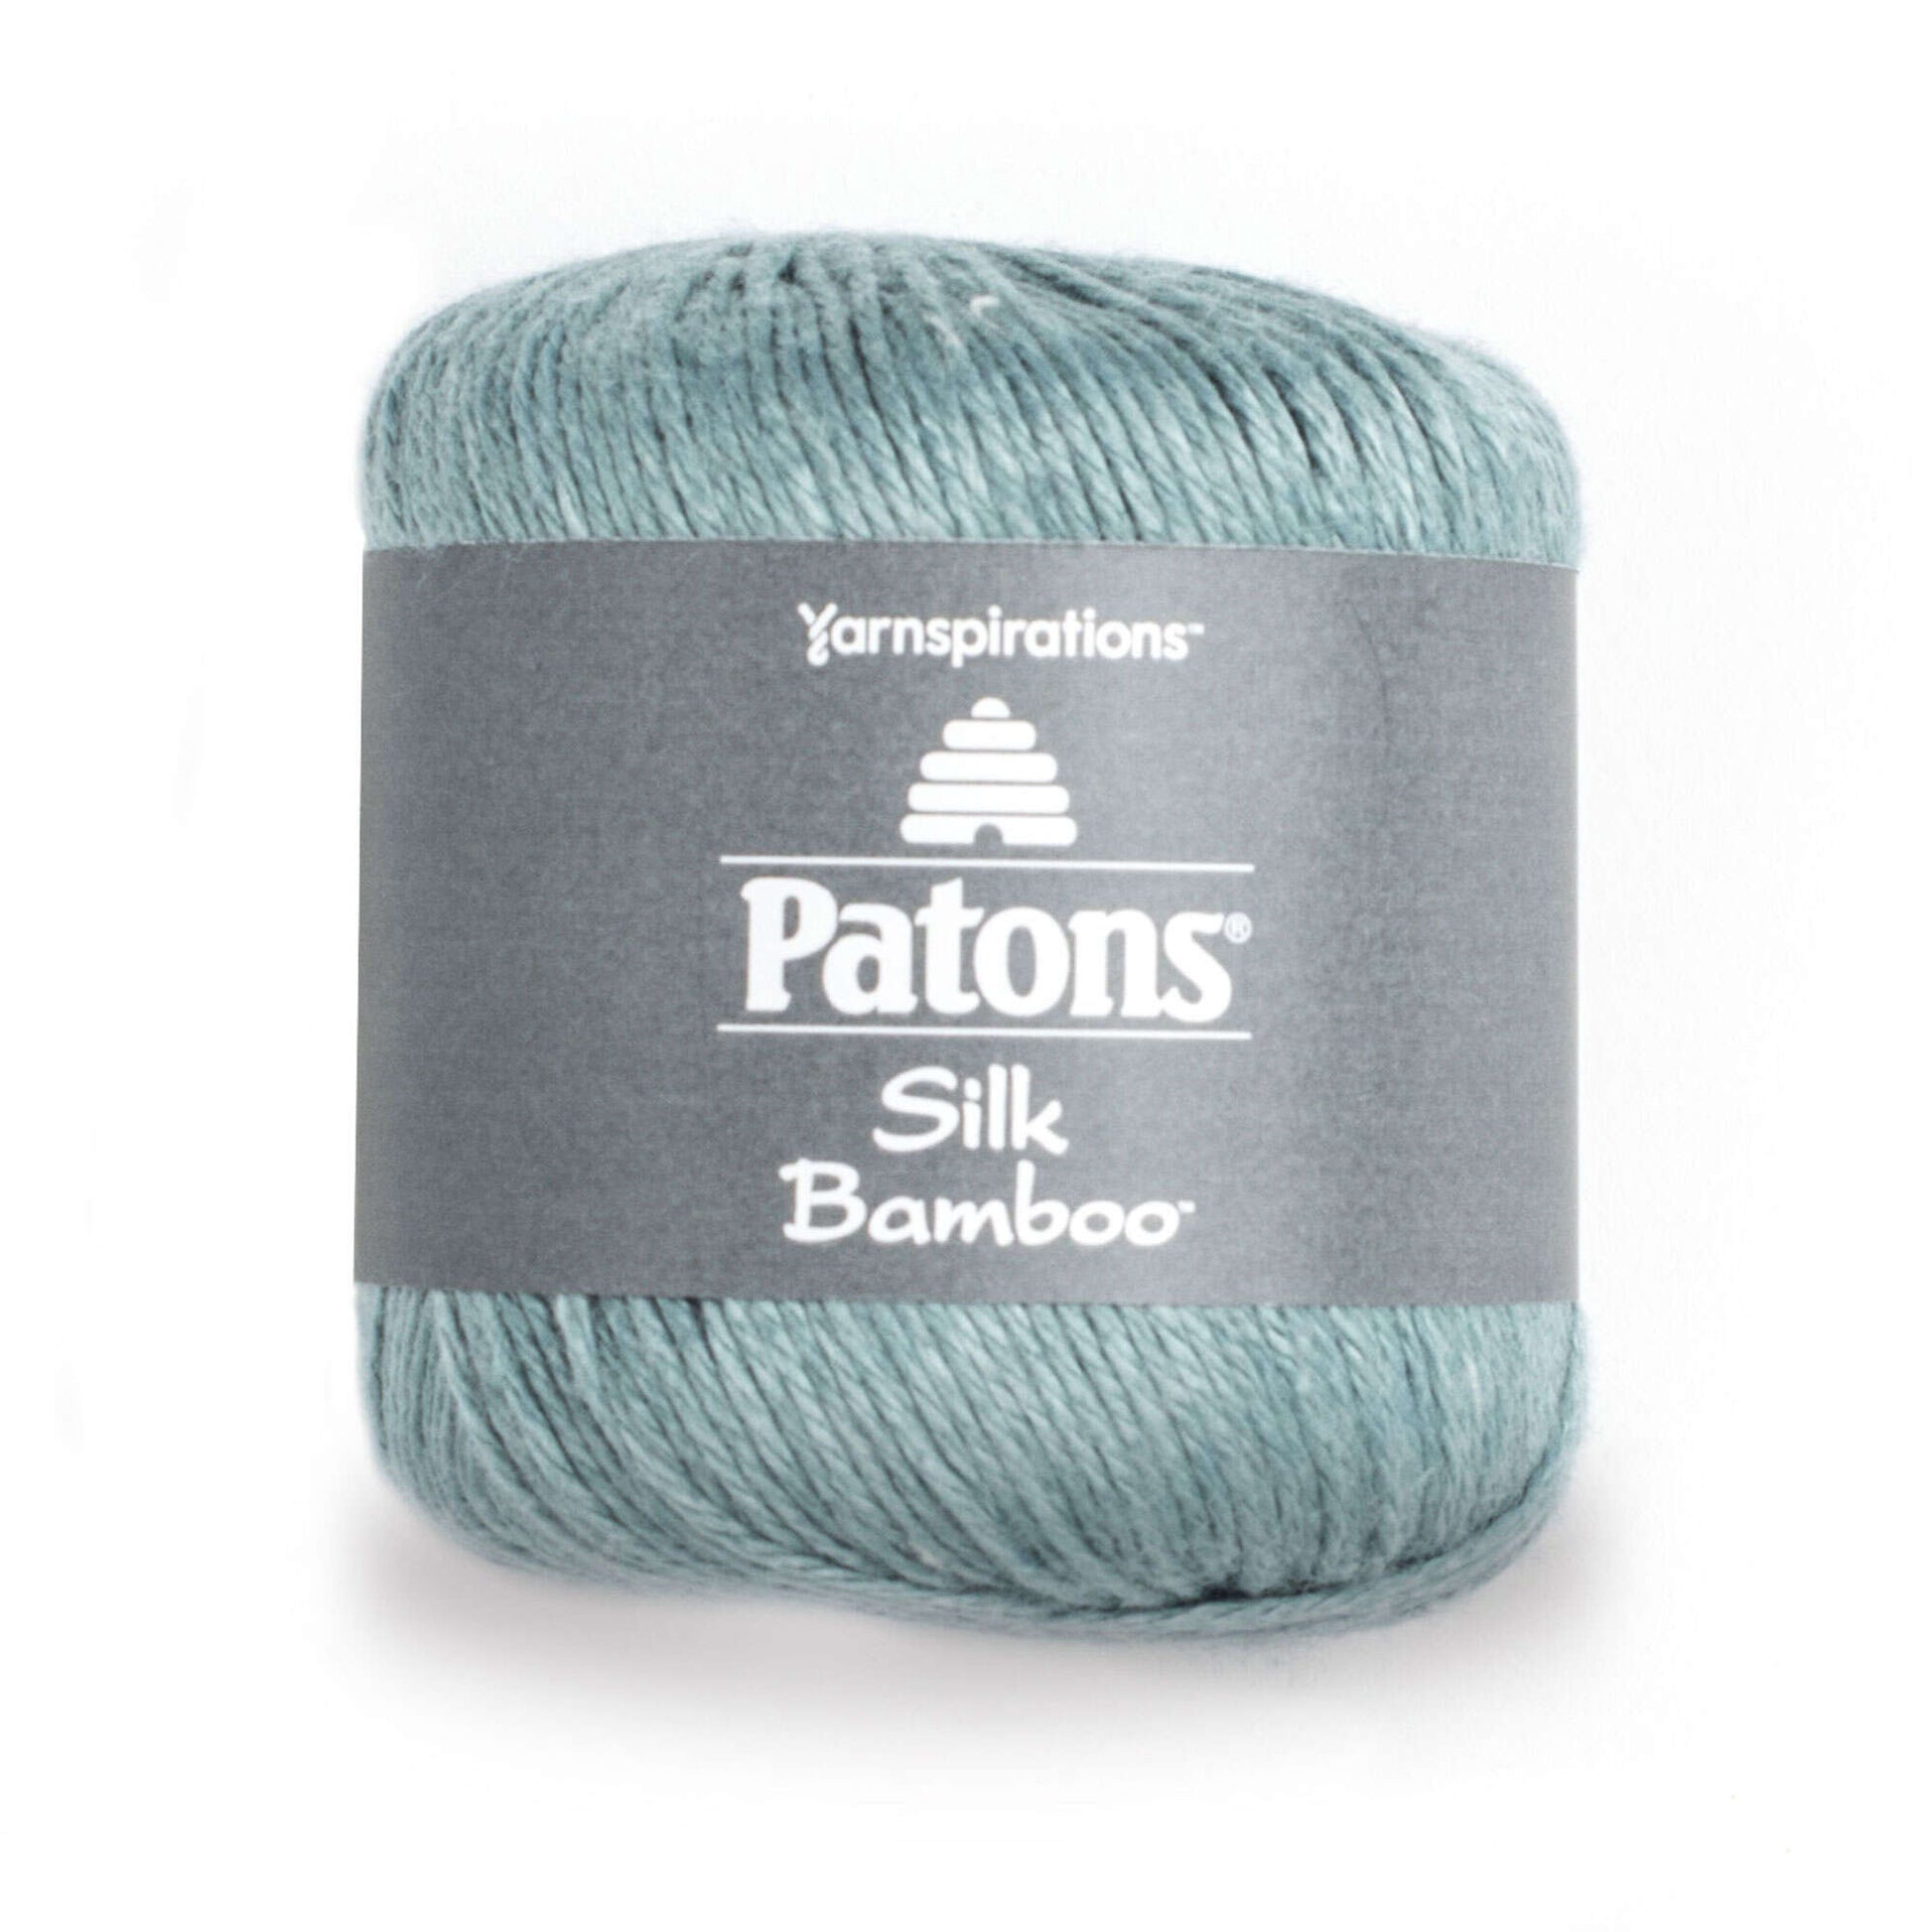 Patons Silk Bamboo Yarn - Discontinued Shades Sea